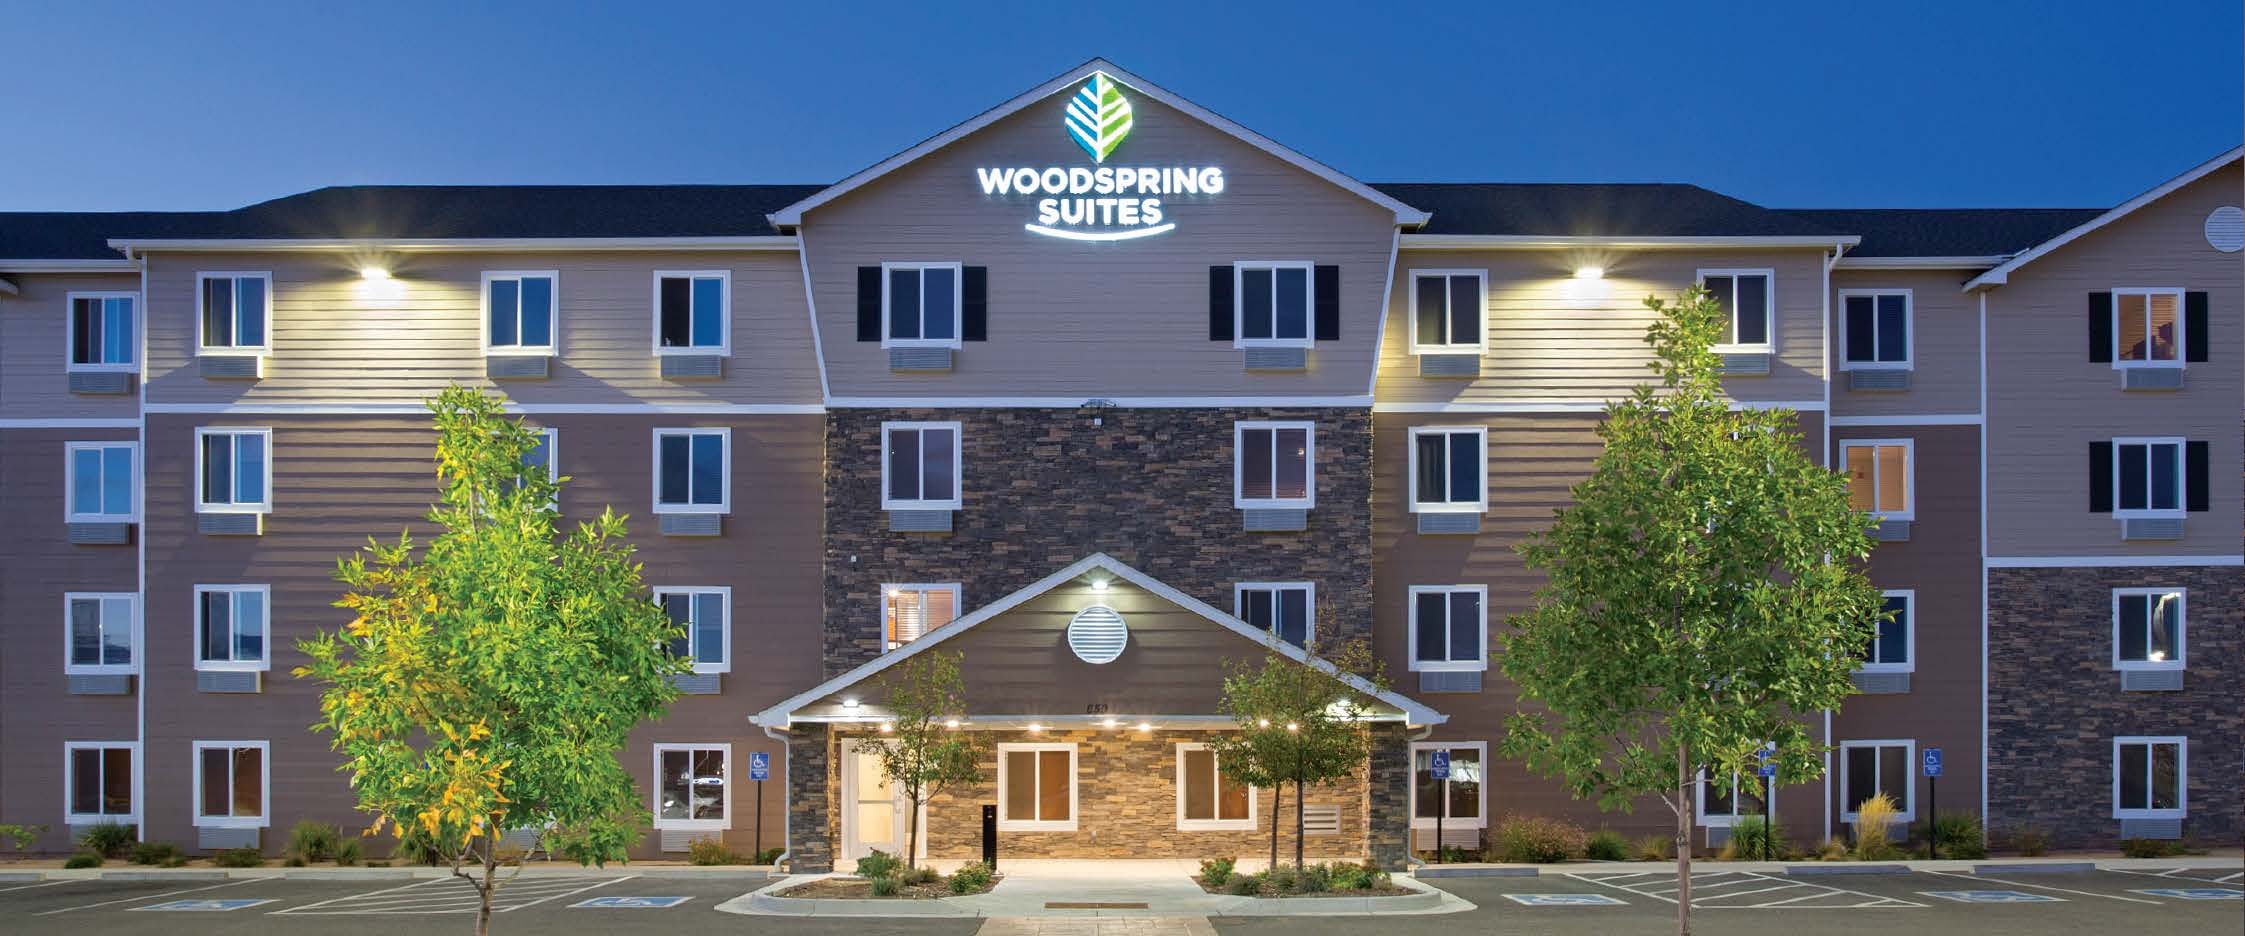 Photo of WoodSpring Suites Ashland - Richmond North, Ashland, VA